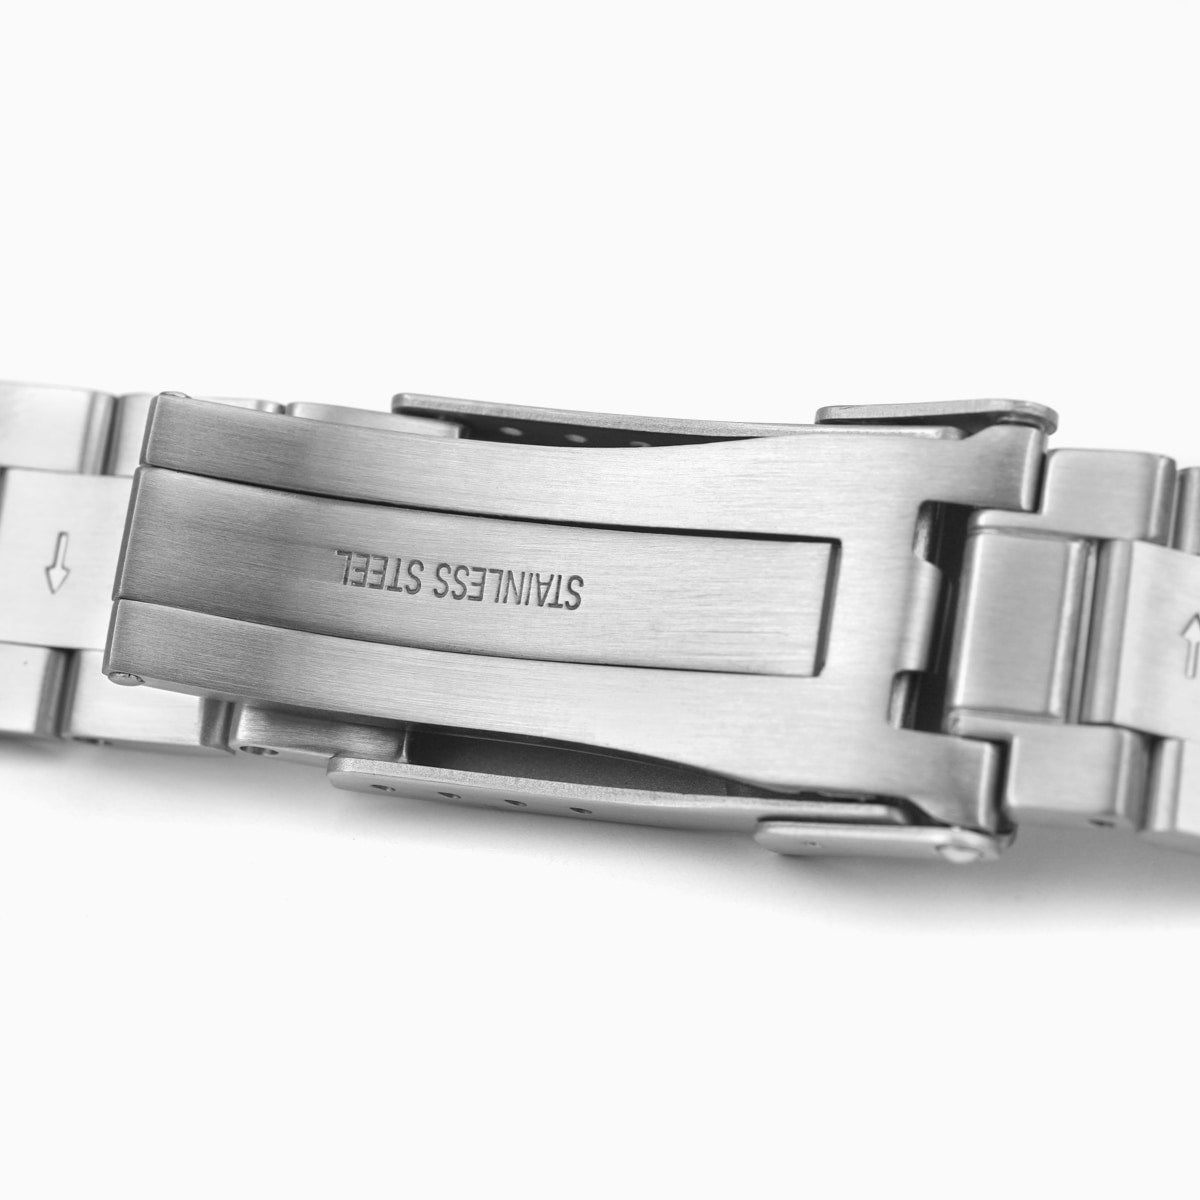 Premium V2 Quick Release 3-Link Bracelet